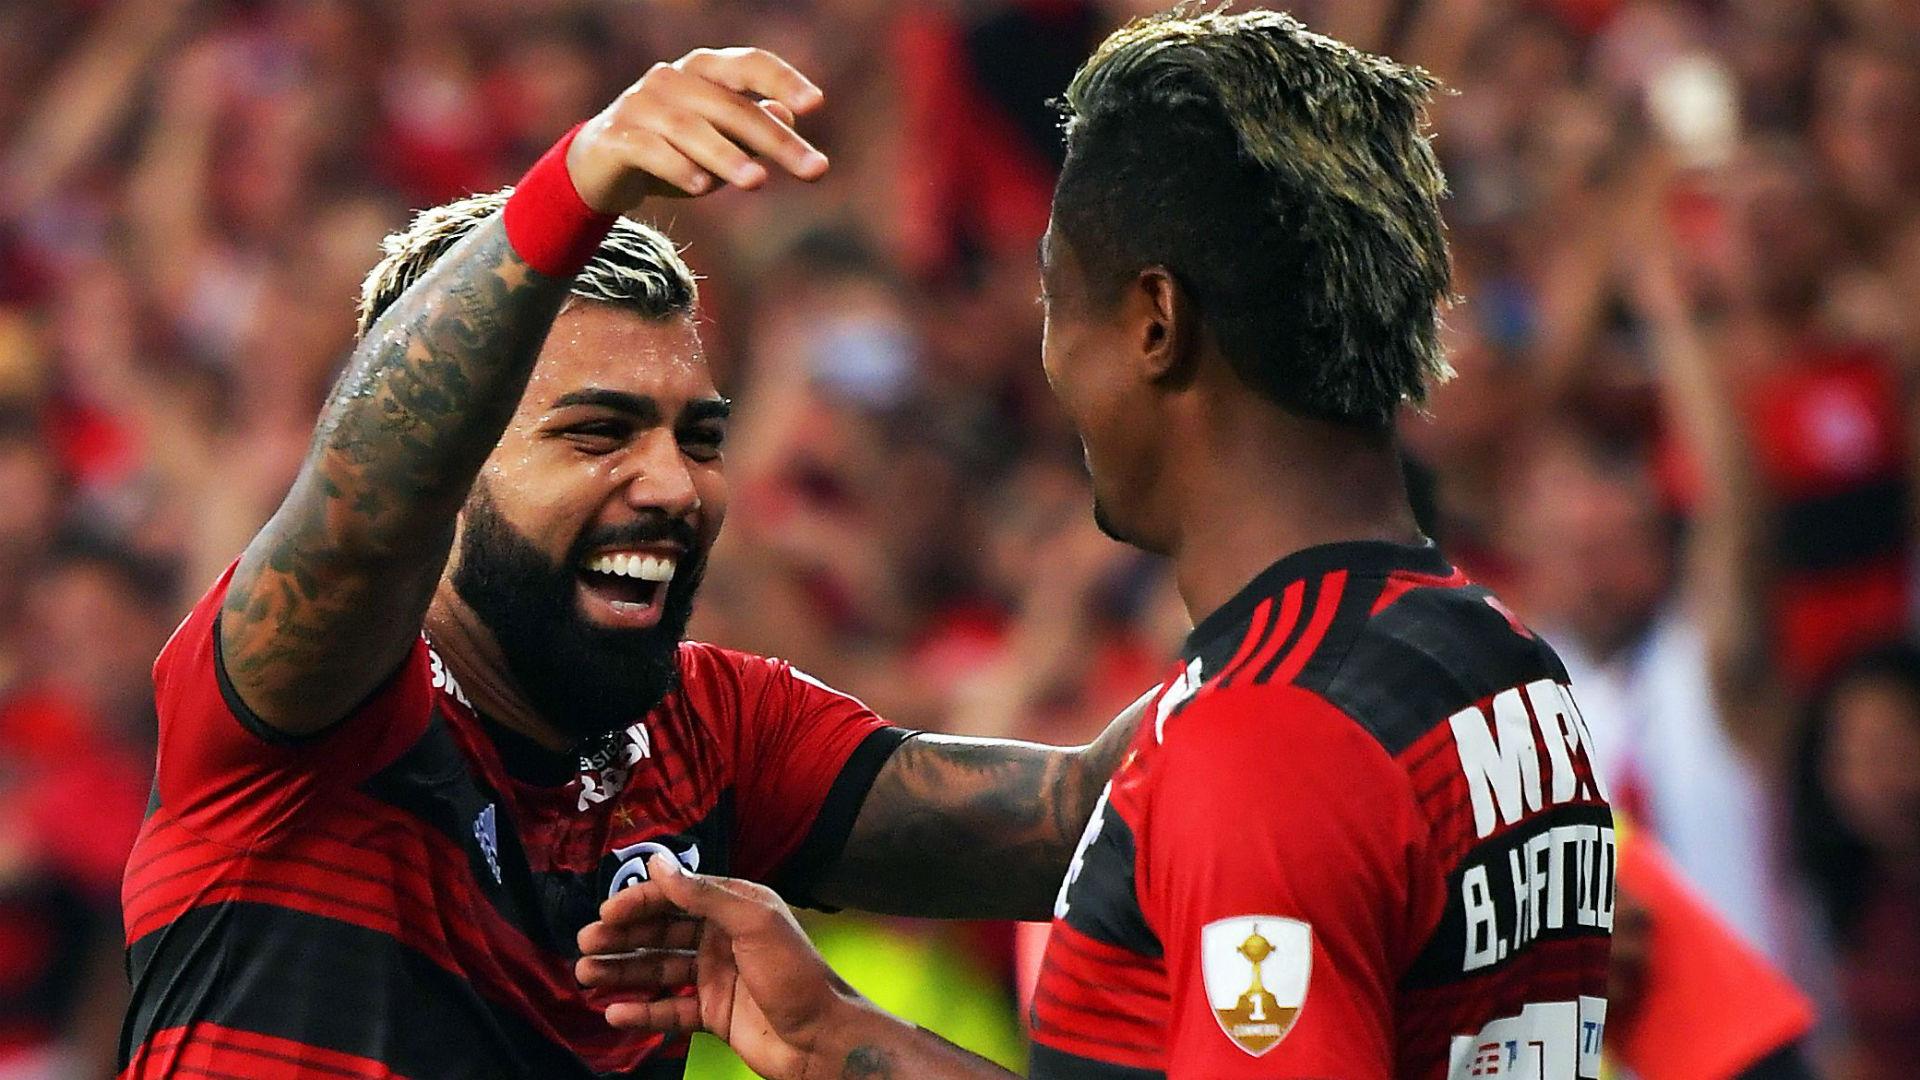 Exlusive Interview with Flamengo's Gabigol